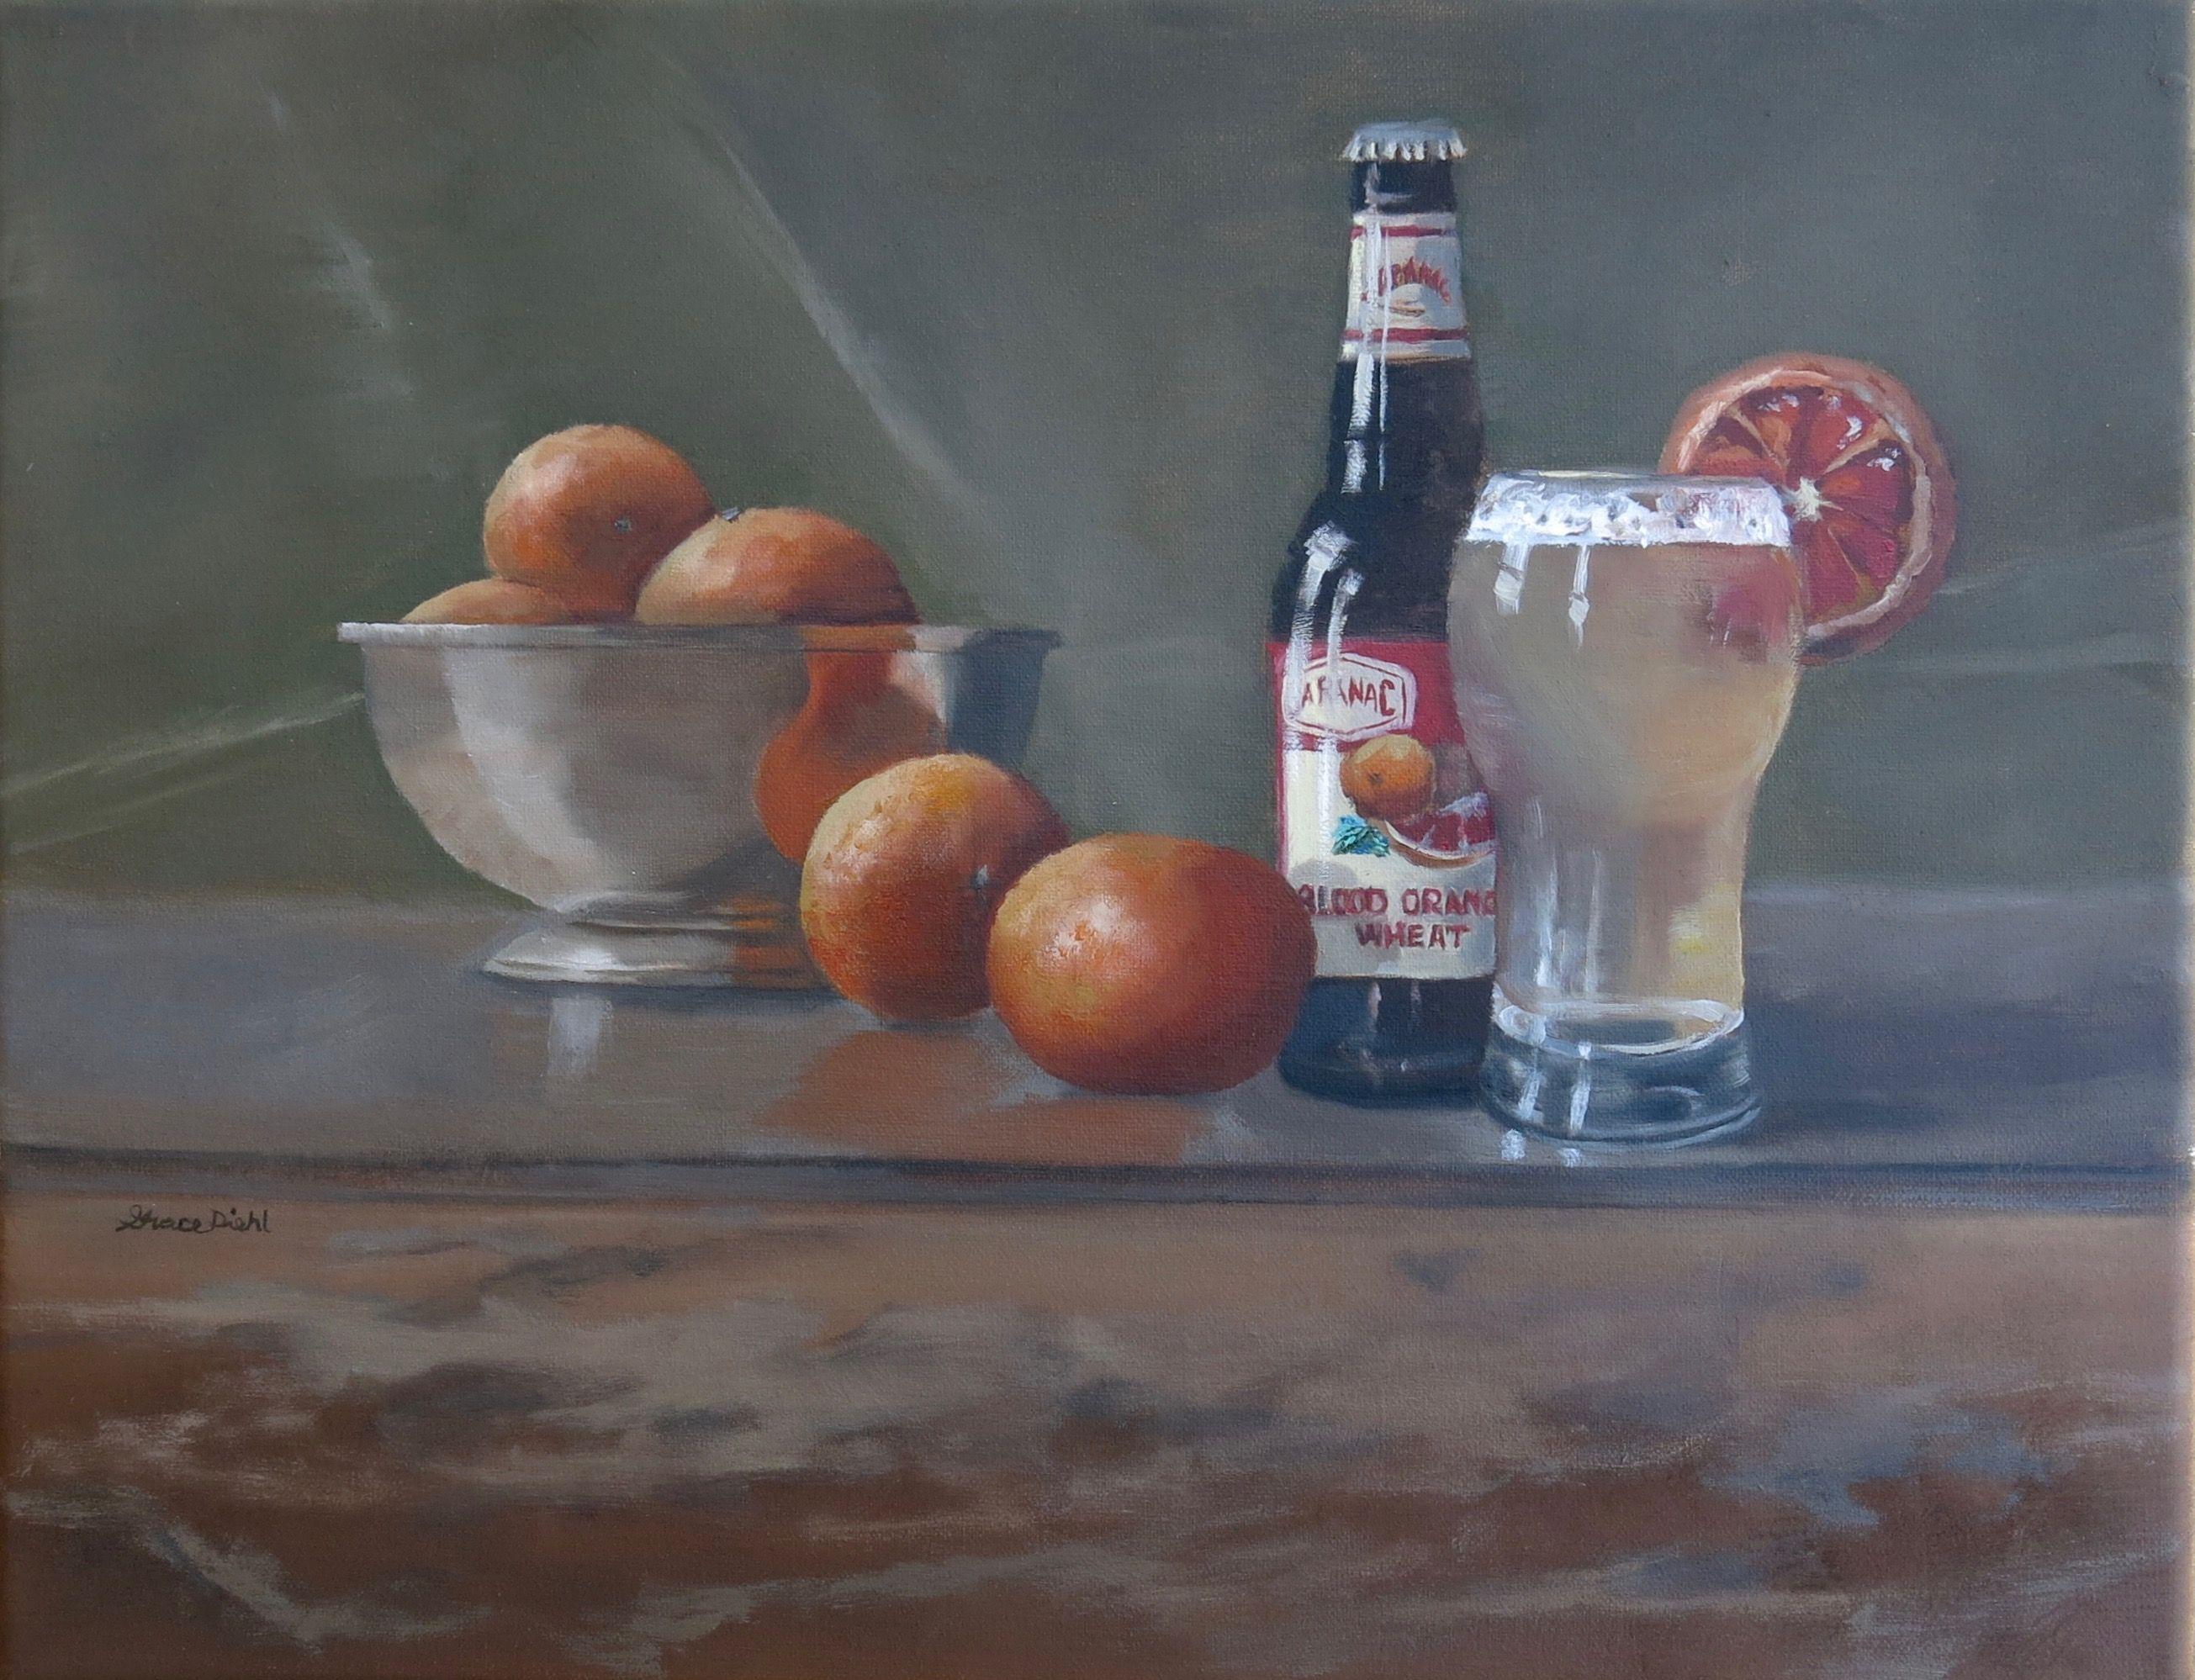 Peinture, huile sur toile, orange sang - Painting de Grace Diehl